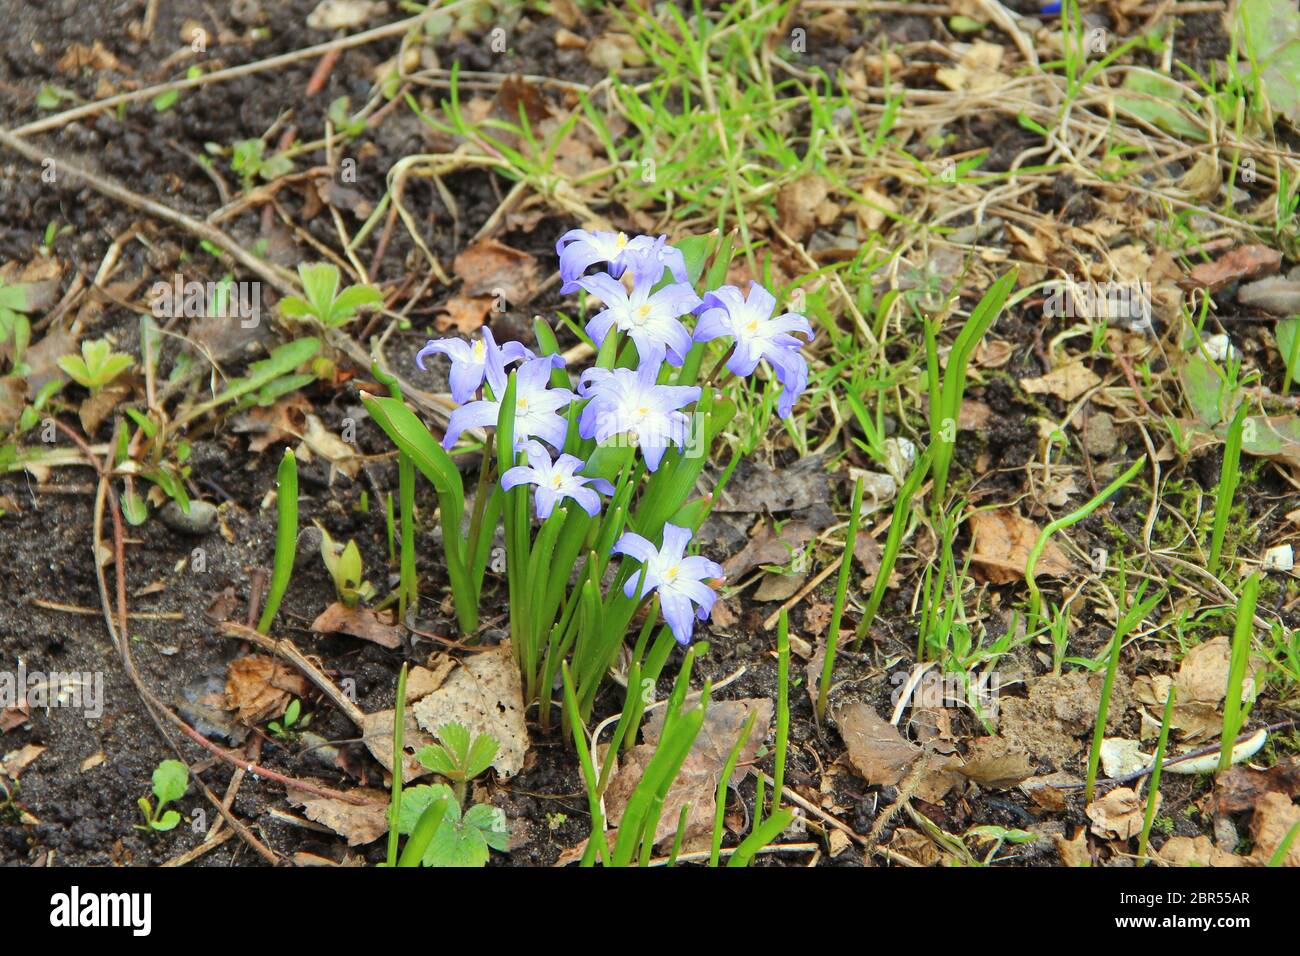 Bellissimi fiori viola blu bianco con foglie verdi crescono dalla terra nera tra foglie secche in primavera. Foto Stock